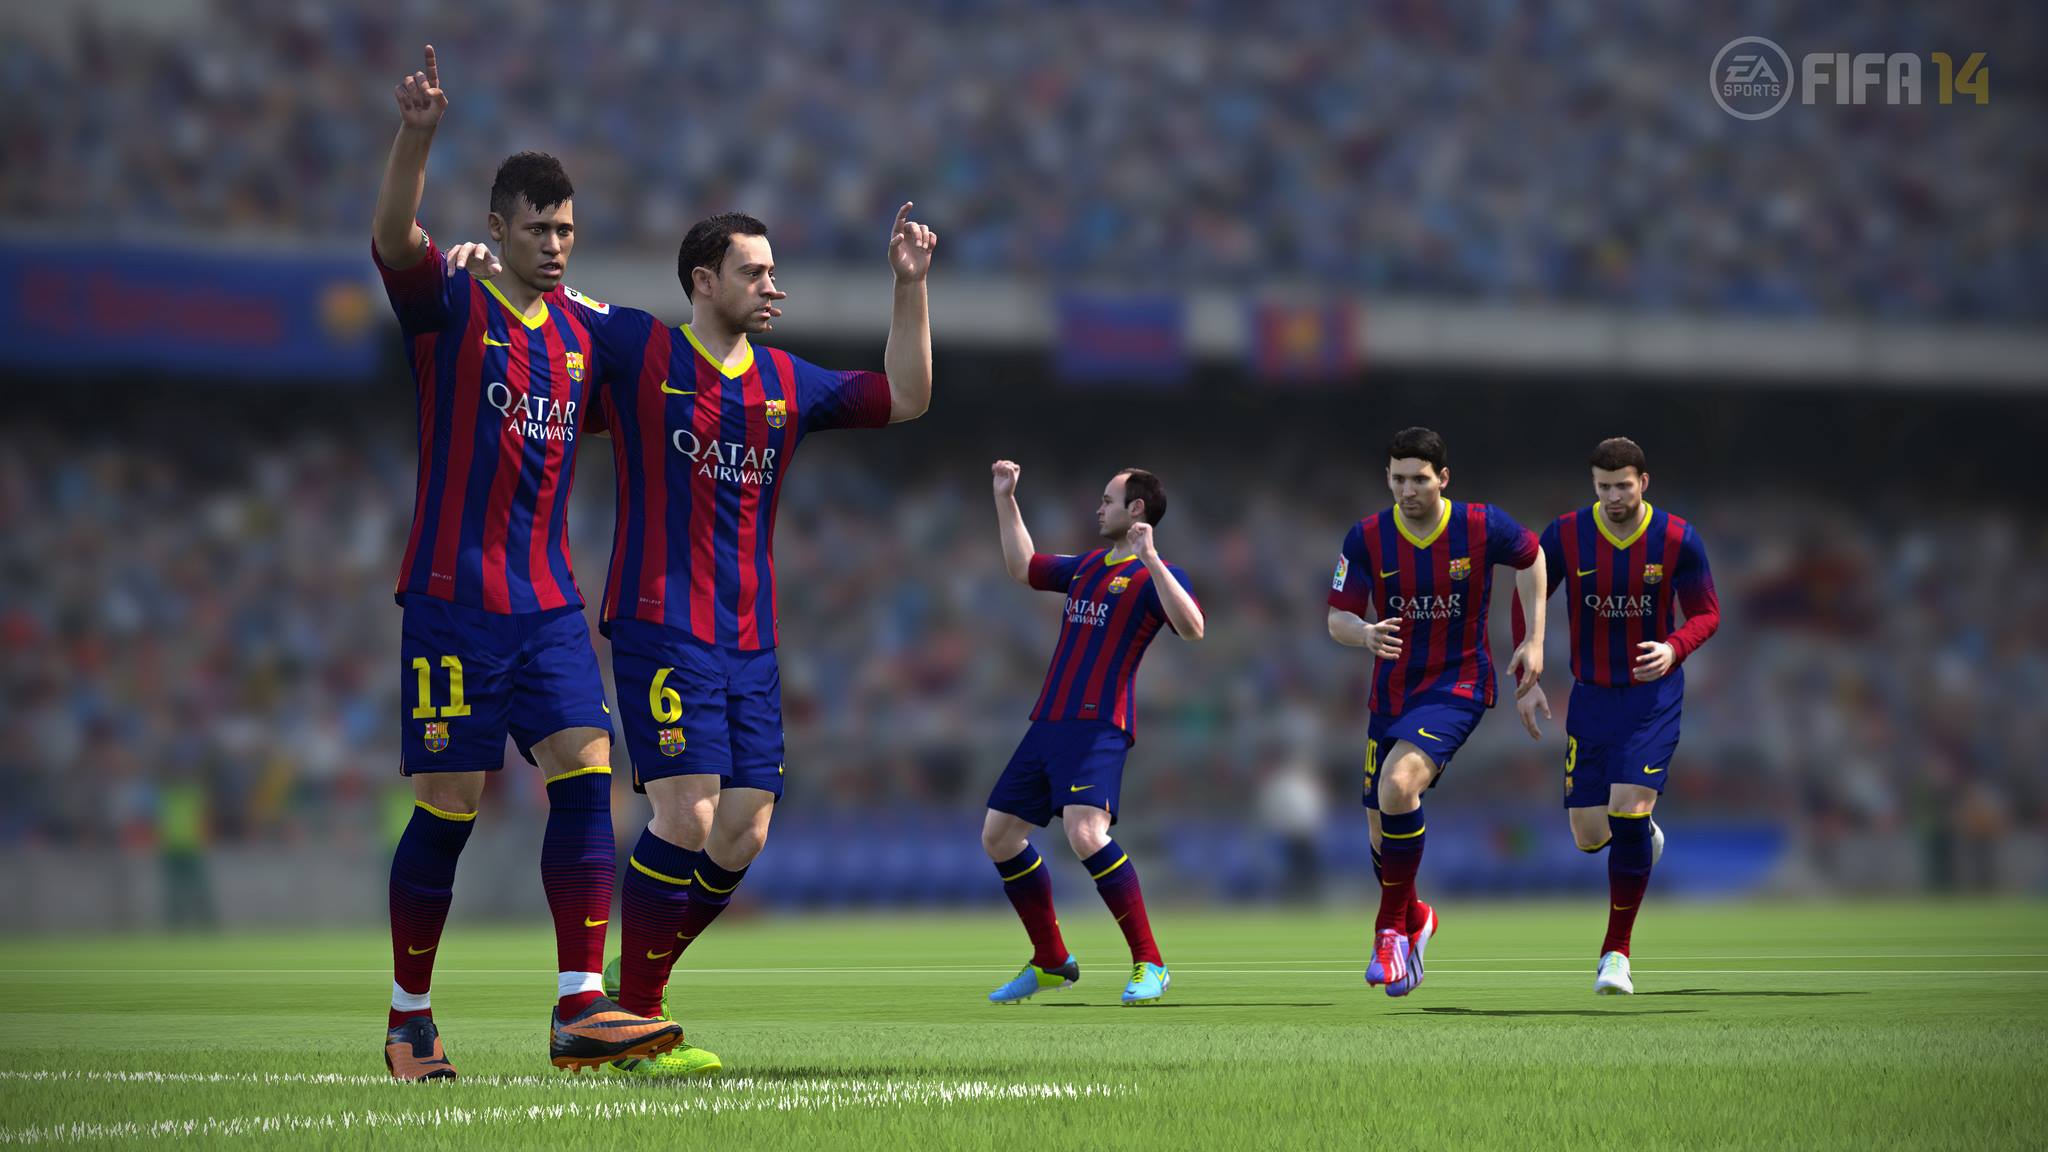 3D obličeje budou mít ve FIFA 14 i další hráči ze španělských klubů 85677